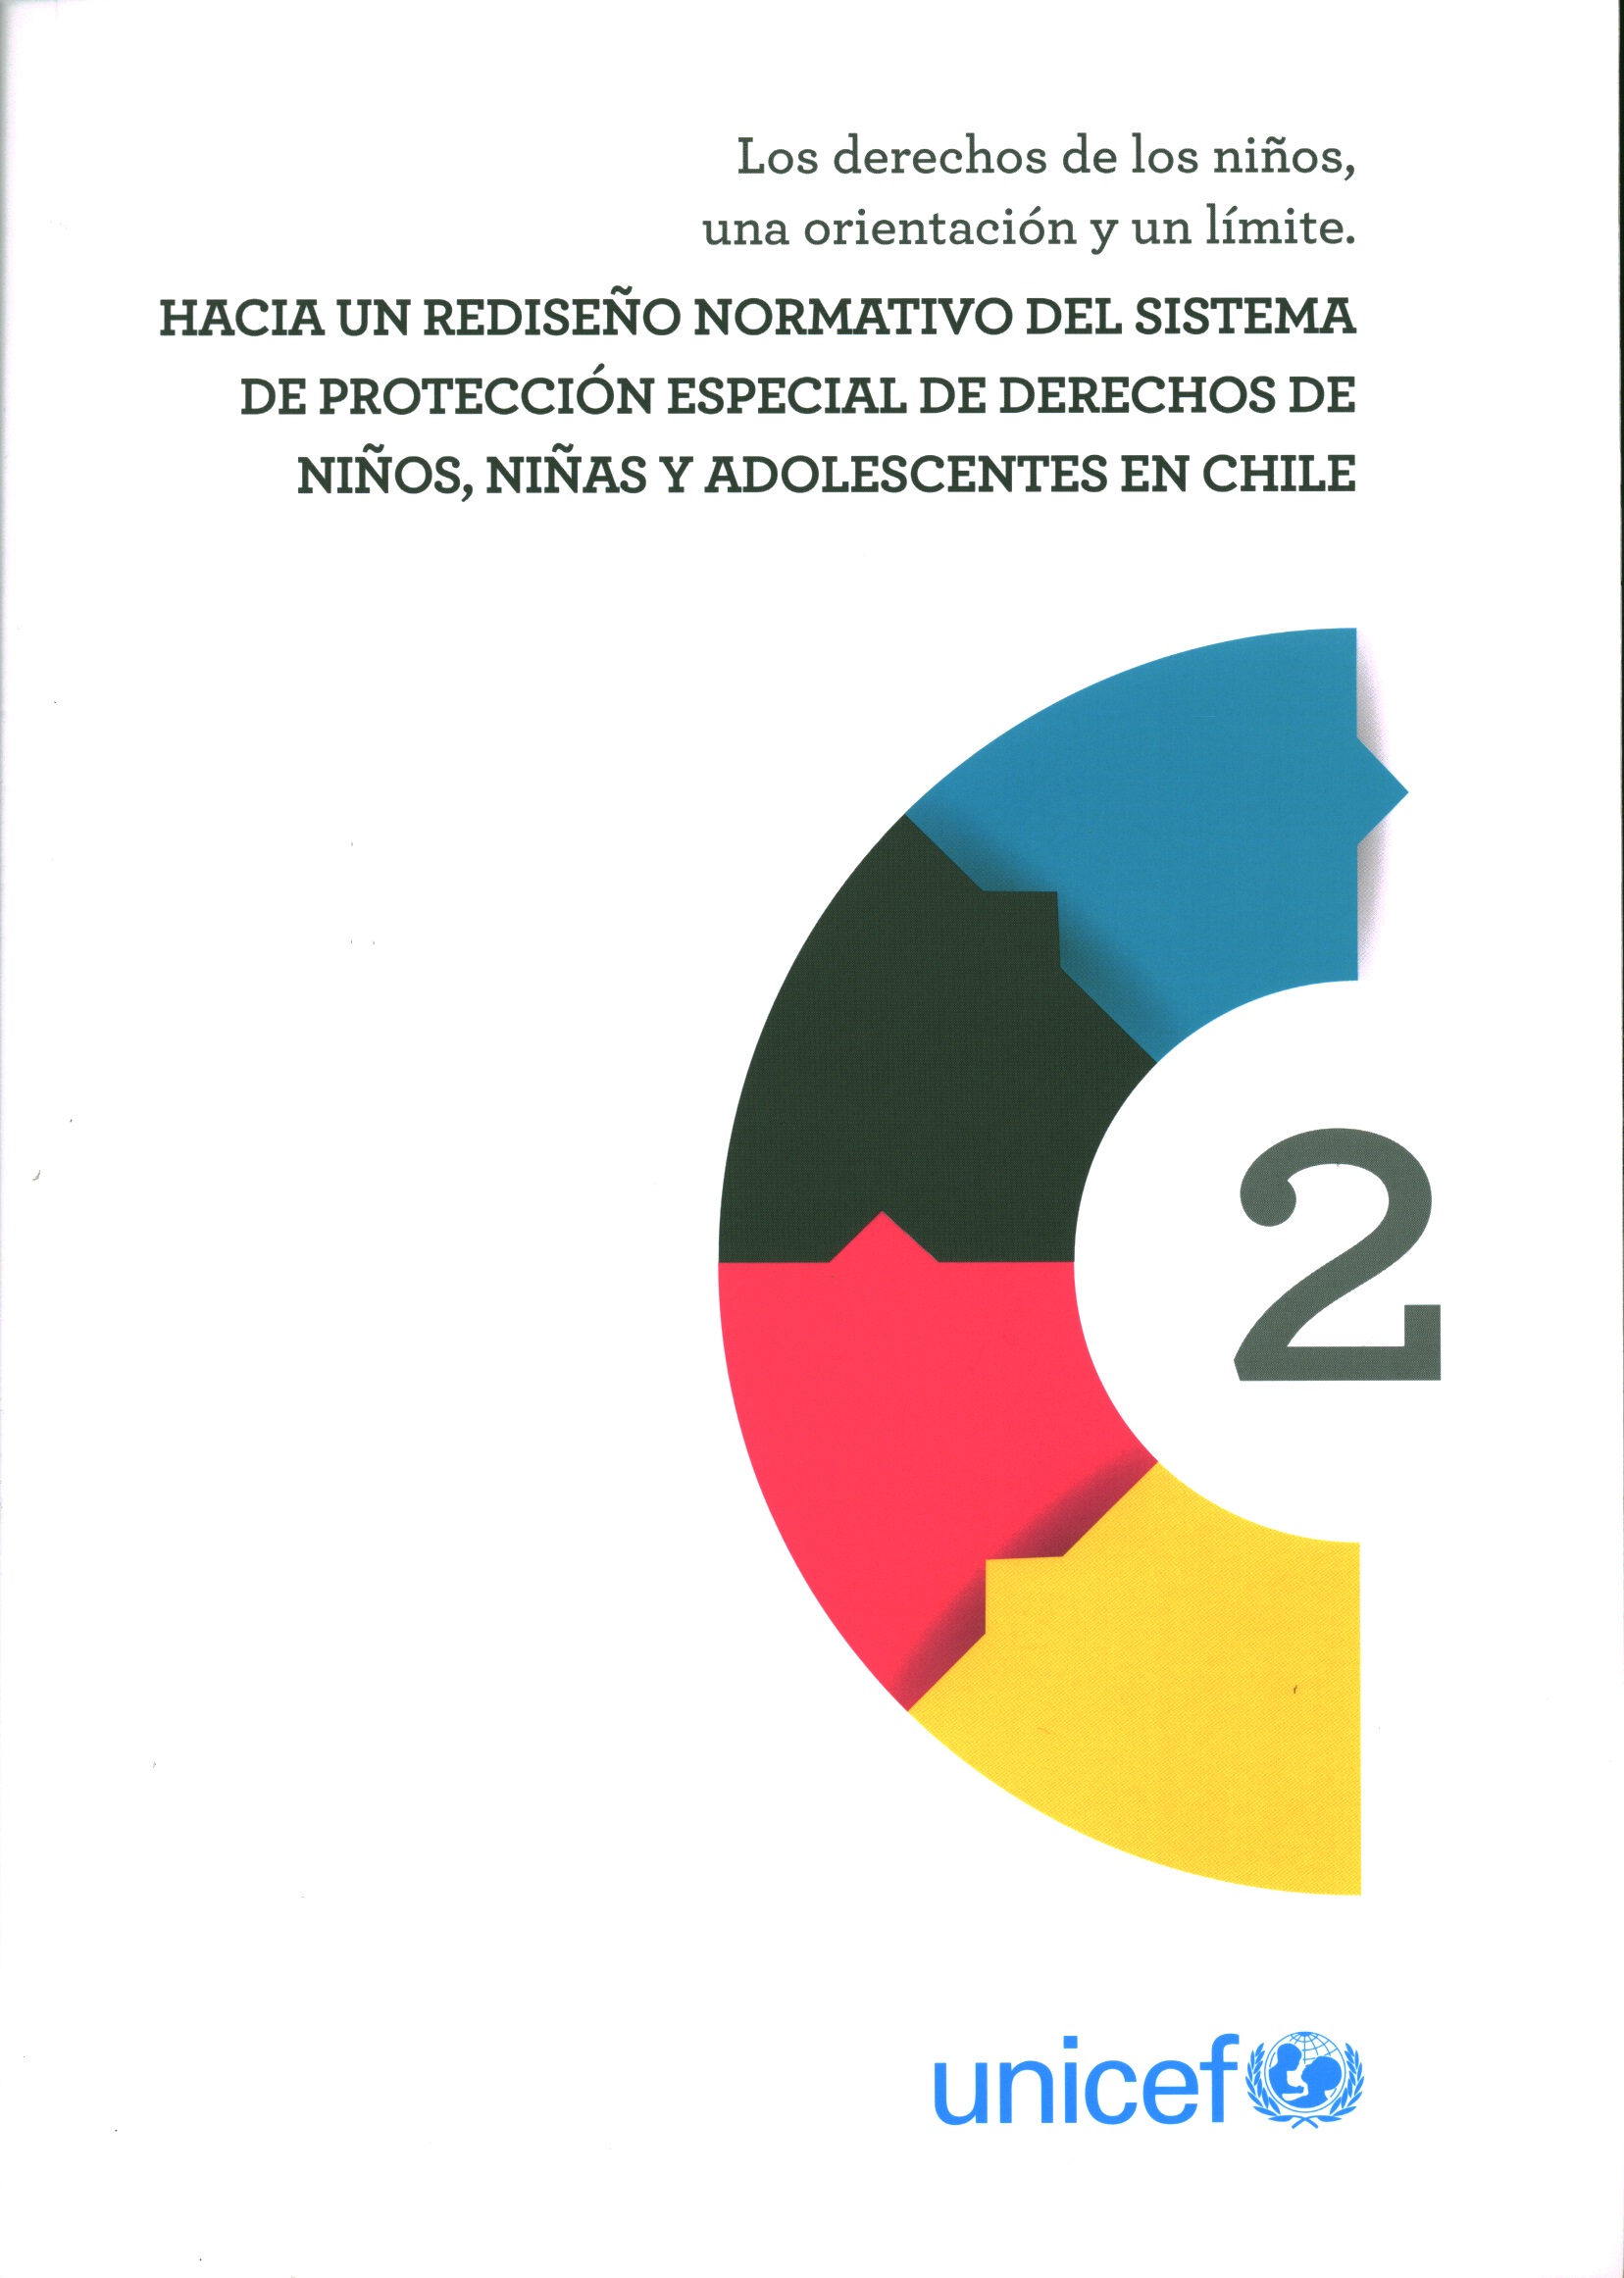 Los derechos de los niños, una orientación y un límite. Hacia un rediseño normativo del sistema de protección especial de derechos de niños, niñas y adolescentes en Chile